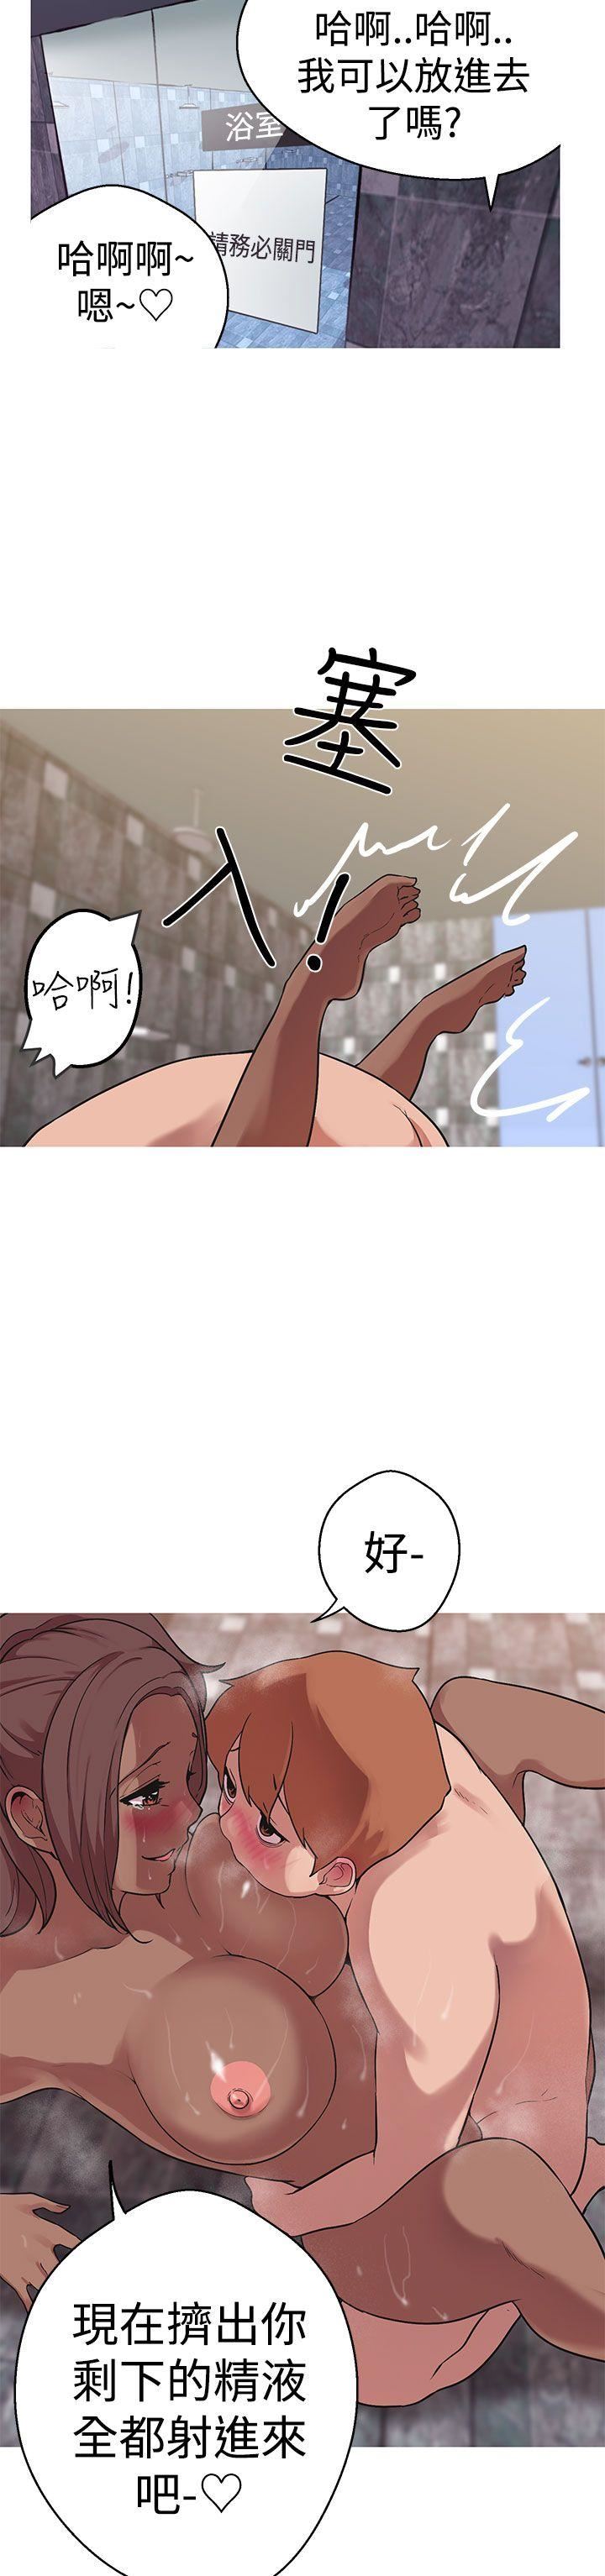 韩国污漫画 女神狩獵 第38话 2